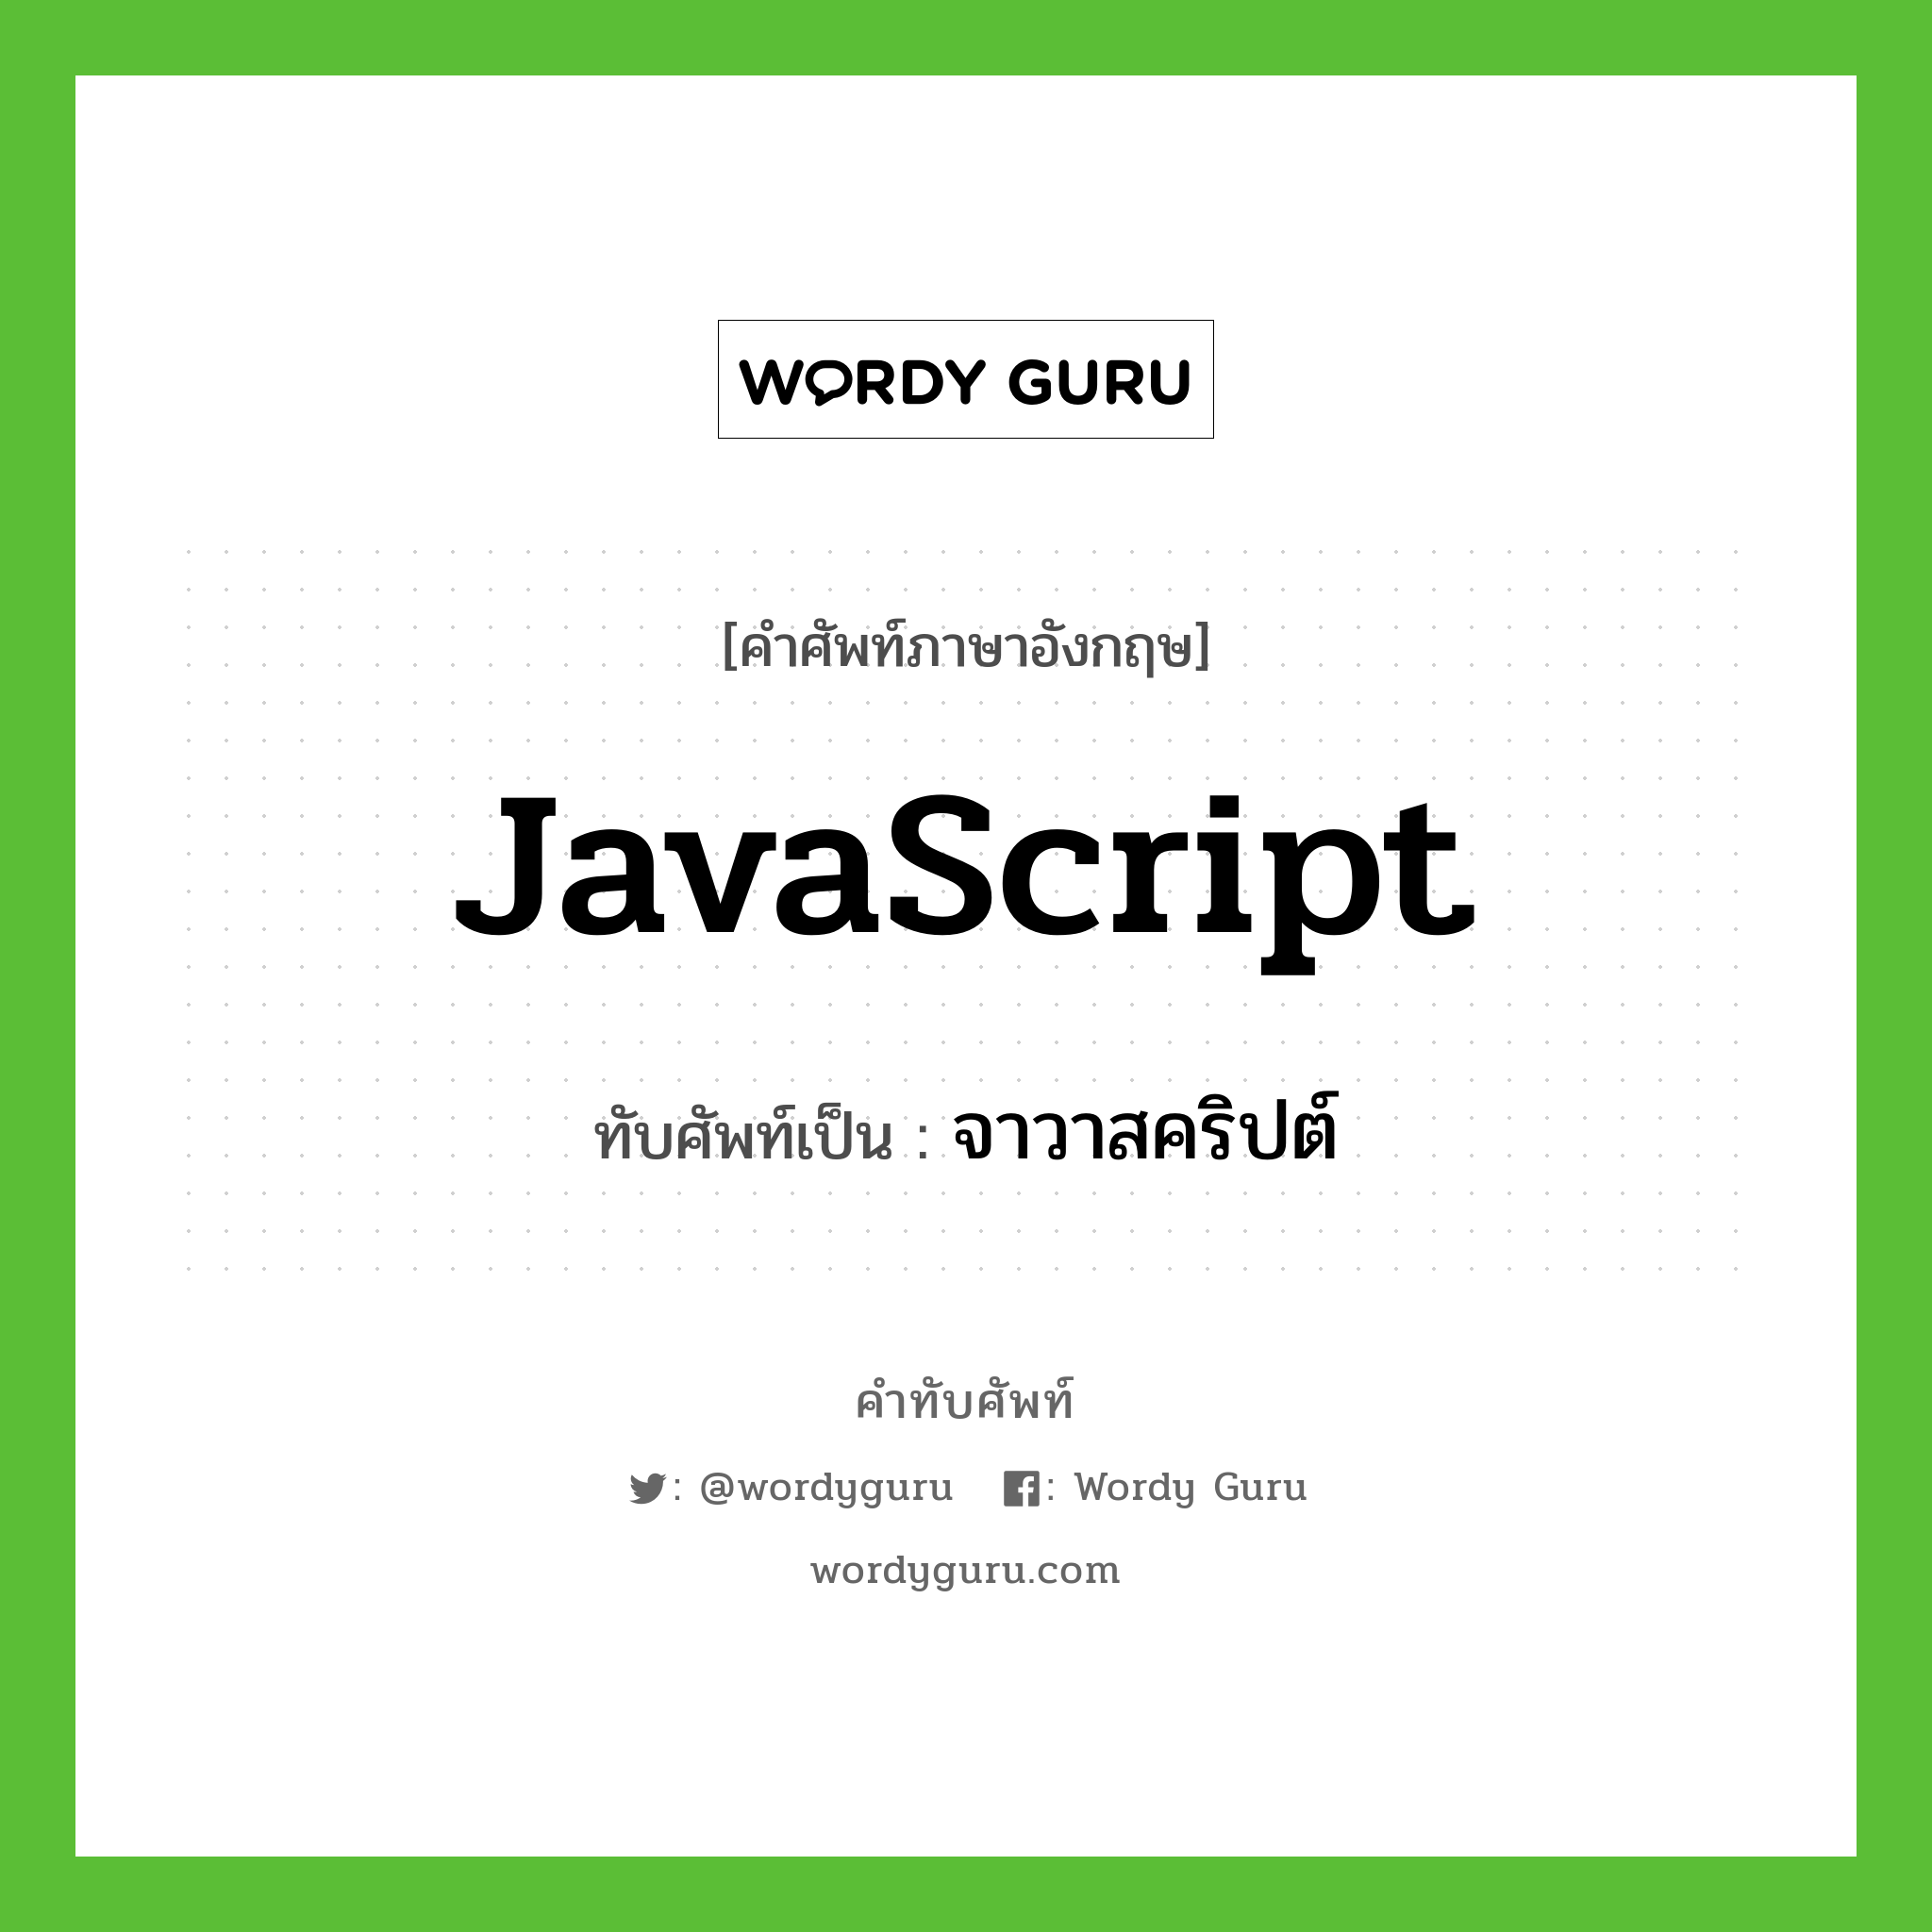 JavaScript เขียนเป็นคำไทยว่าอะไร?, คำศัพท์ภาษาอังกฤษ JavaScript ทับศัพท์เป็น จาวาสคริปต์